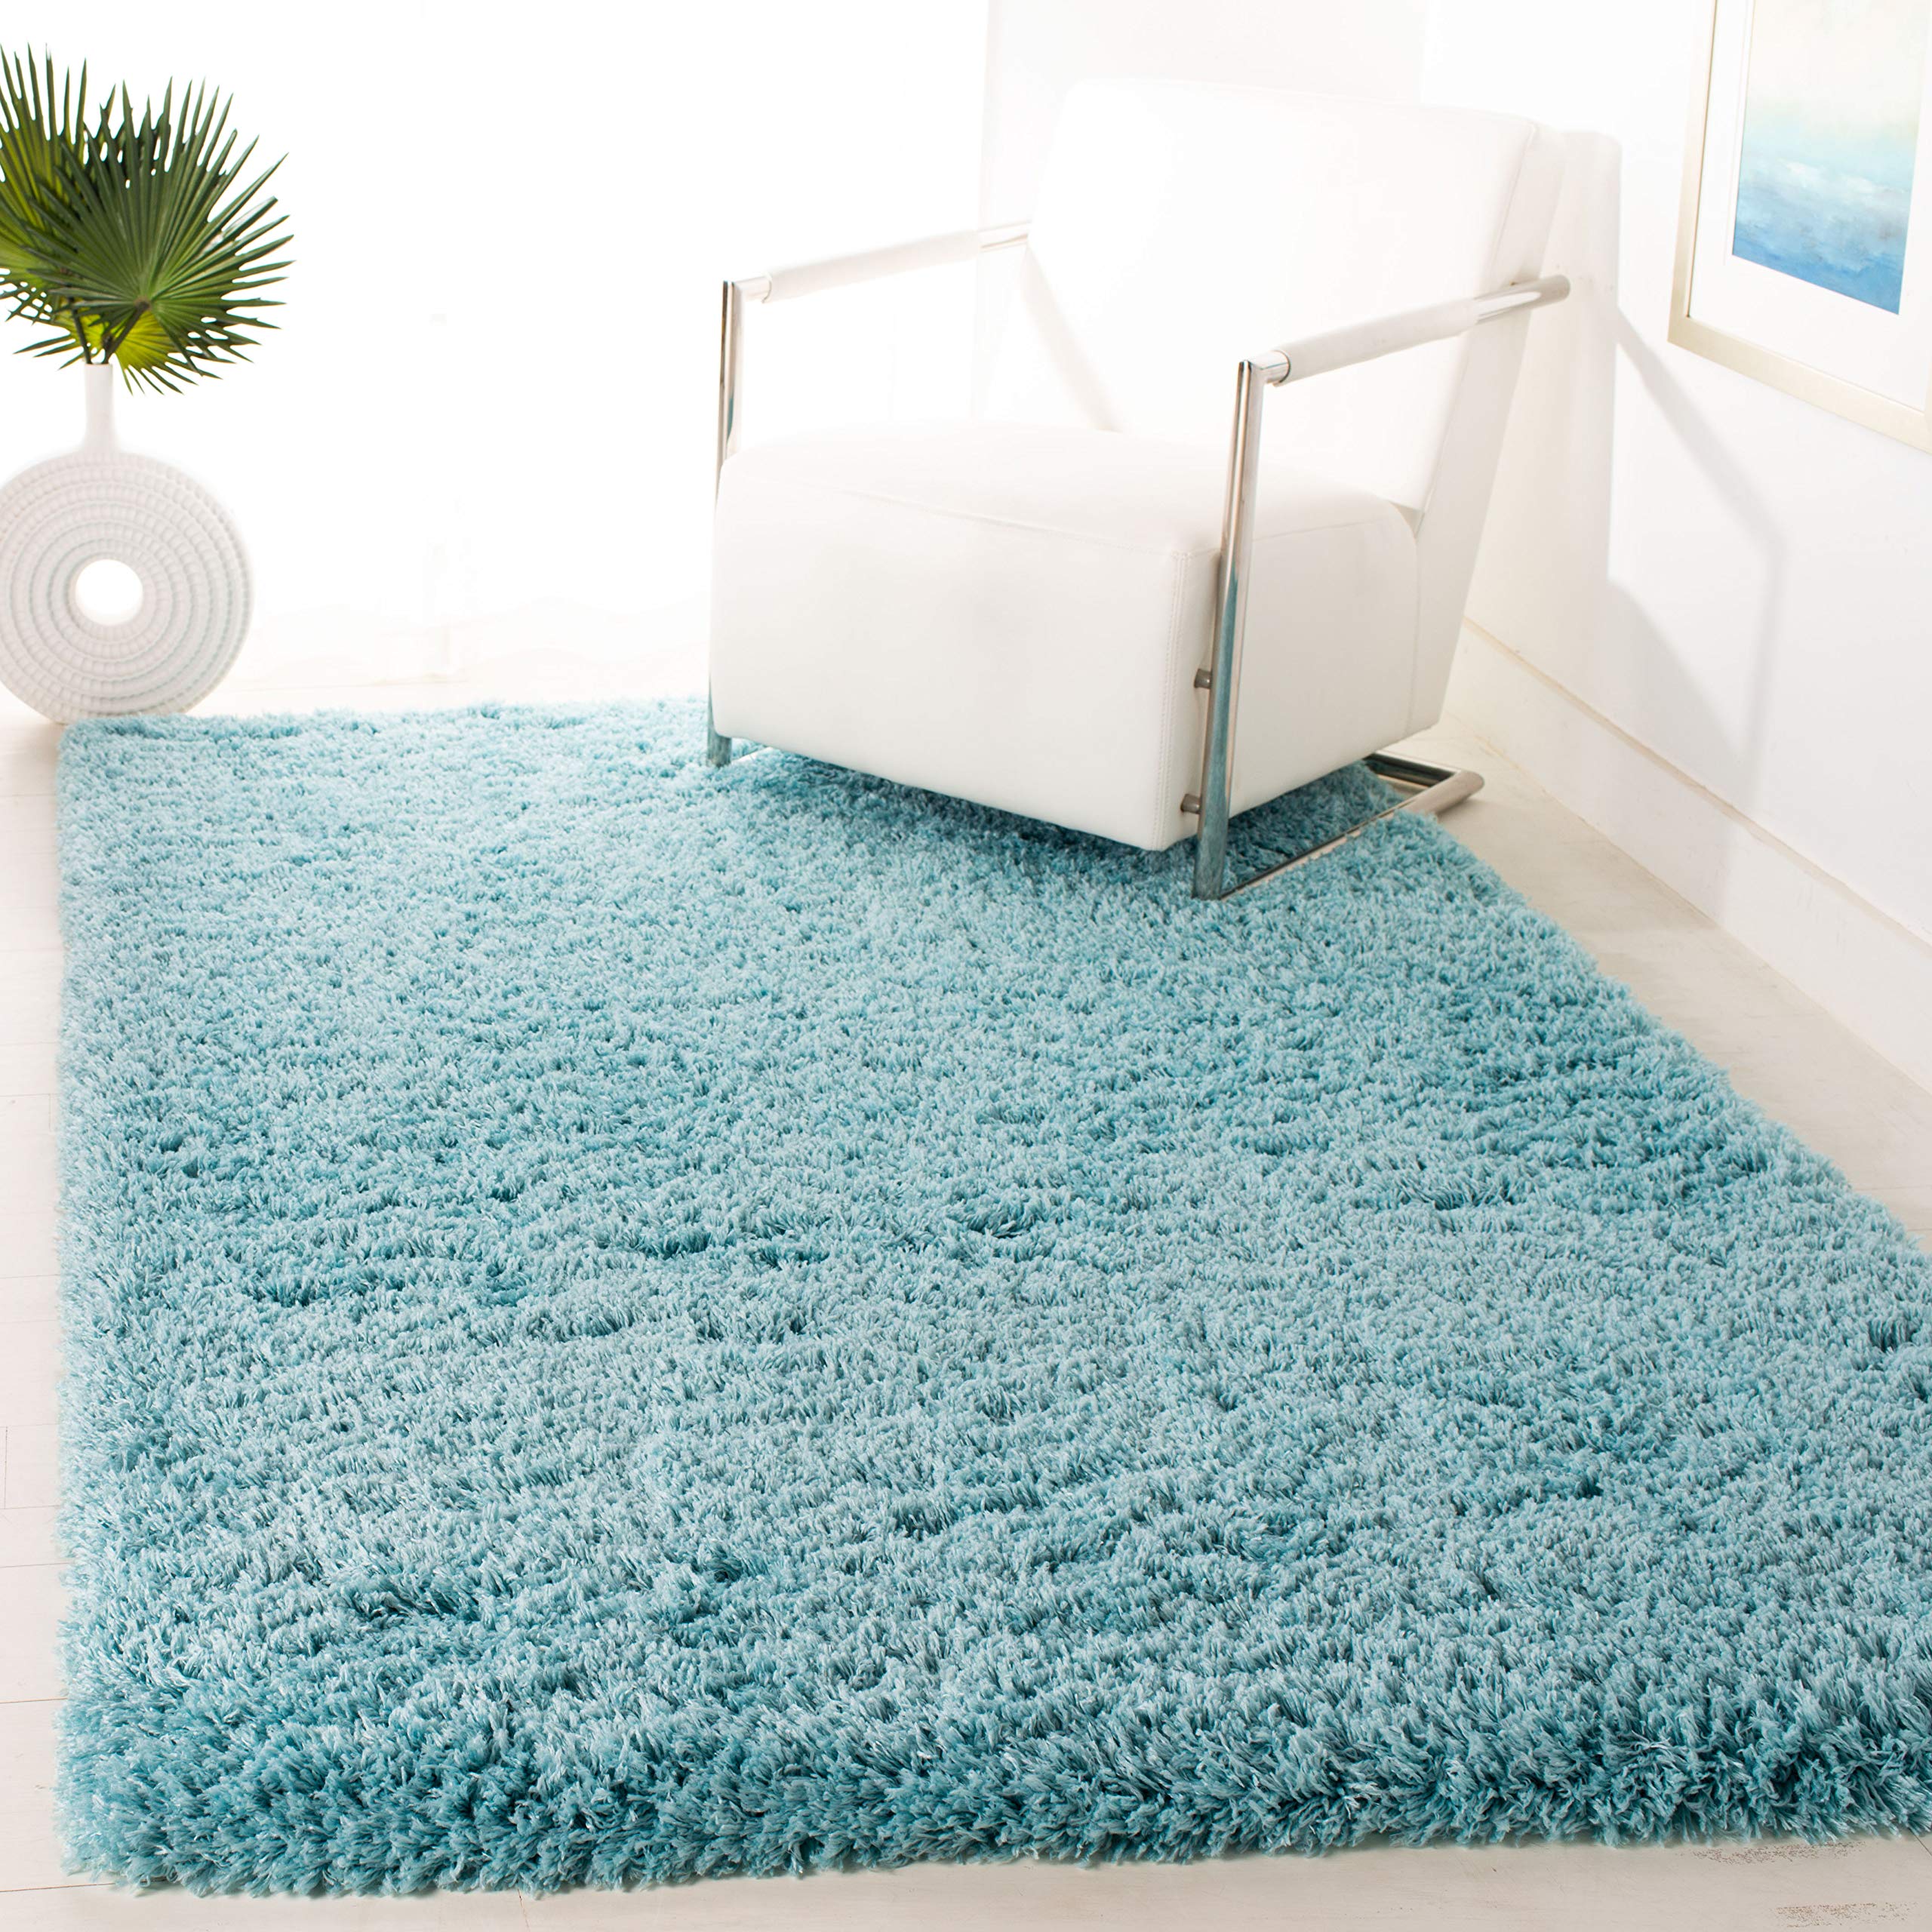  Safavieh Polar Shag 系列特色地毯 - 4 英寸 x 6 英寸，浅绿松石色，纯色迷人设计，不脱落且易于护理，3 英寸厚，非常适合入口、客厅、卧室的人流密集区域...